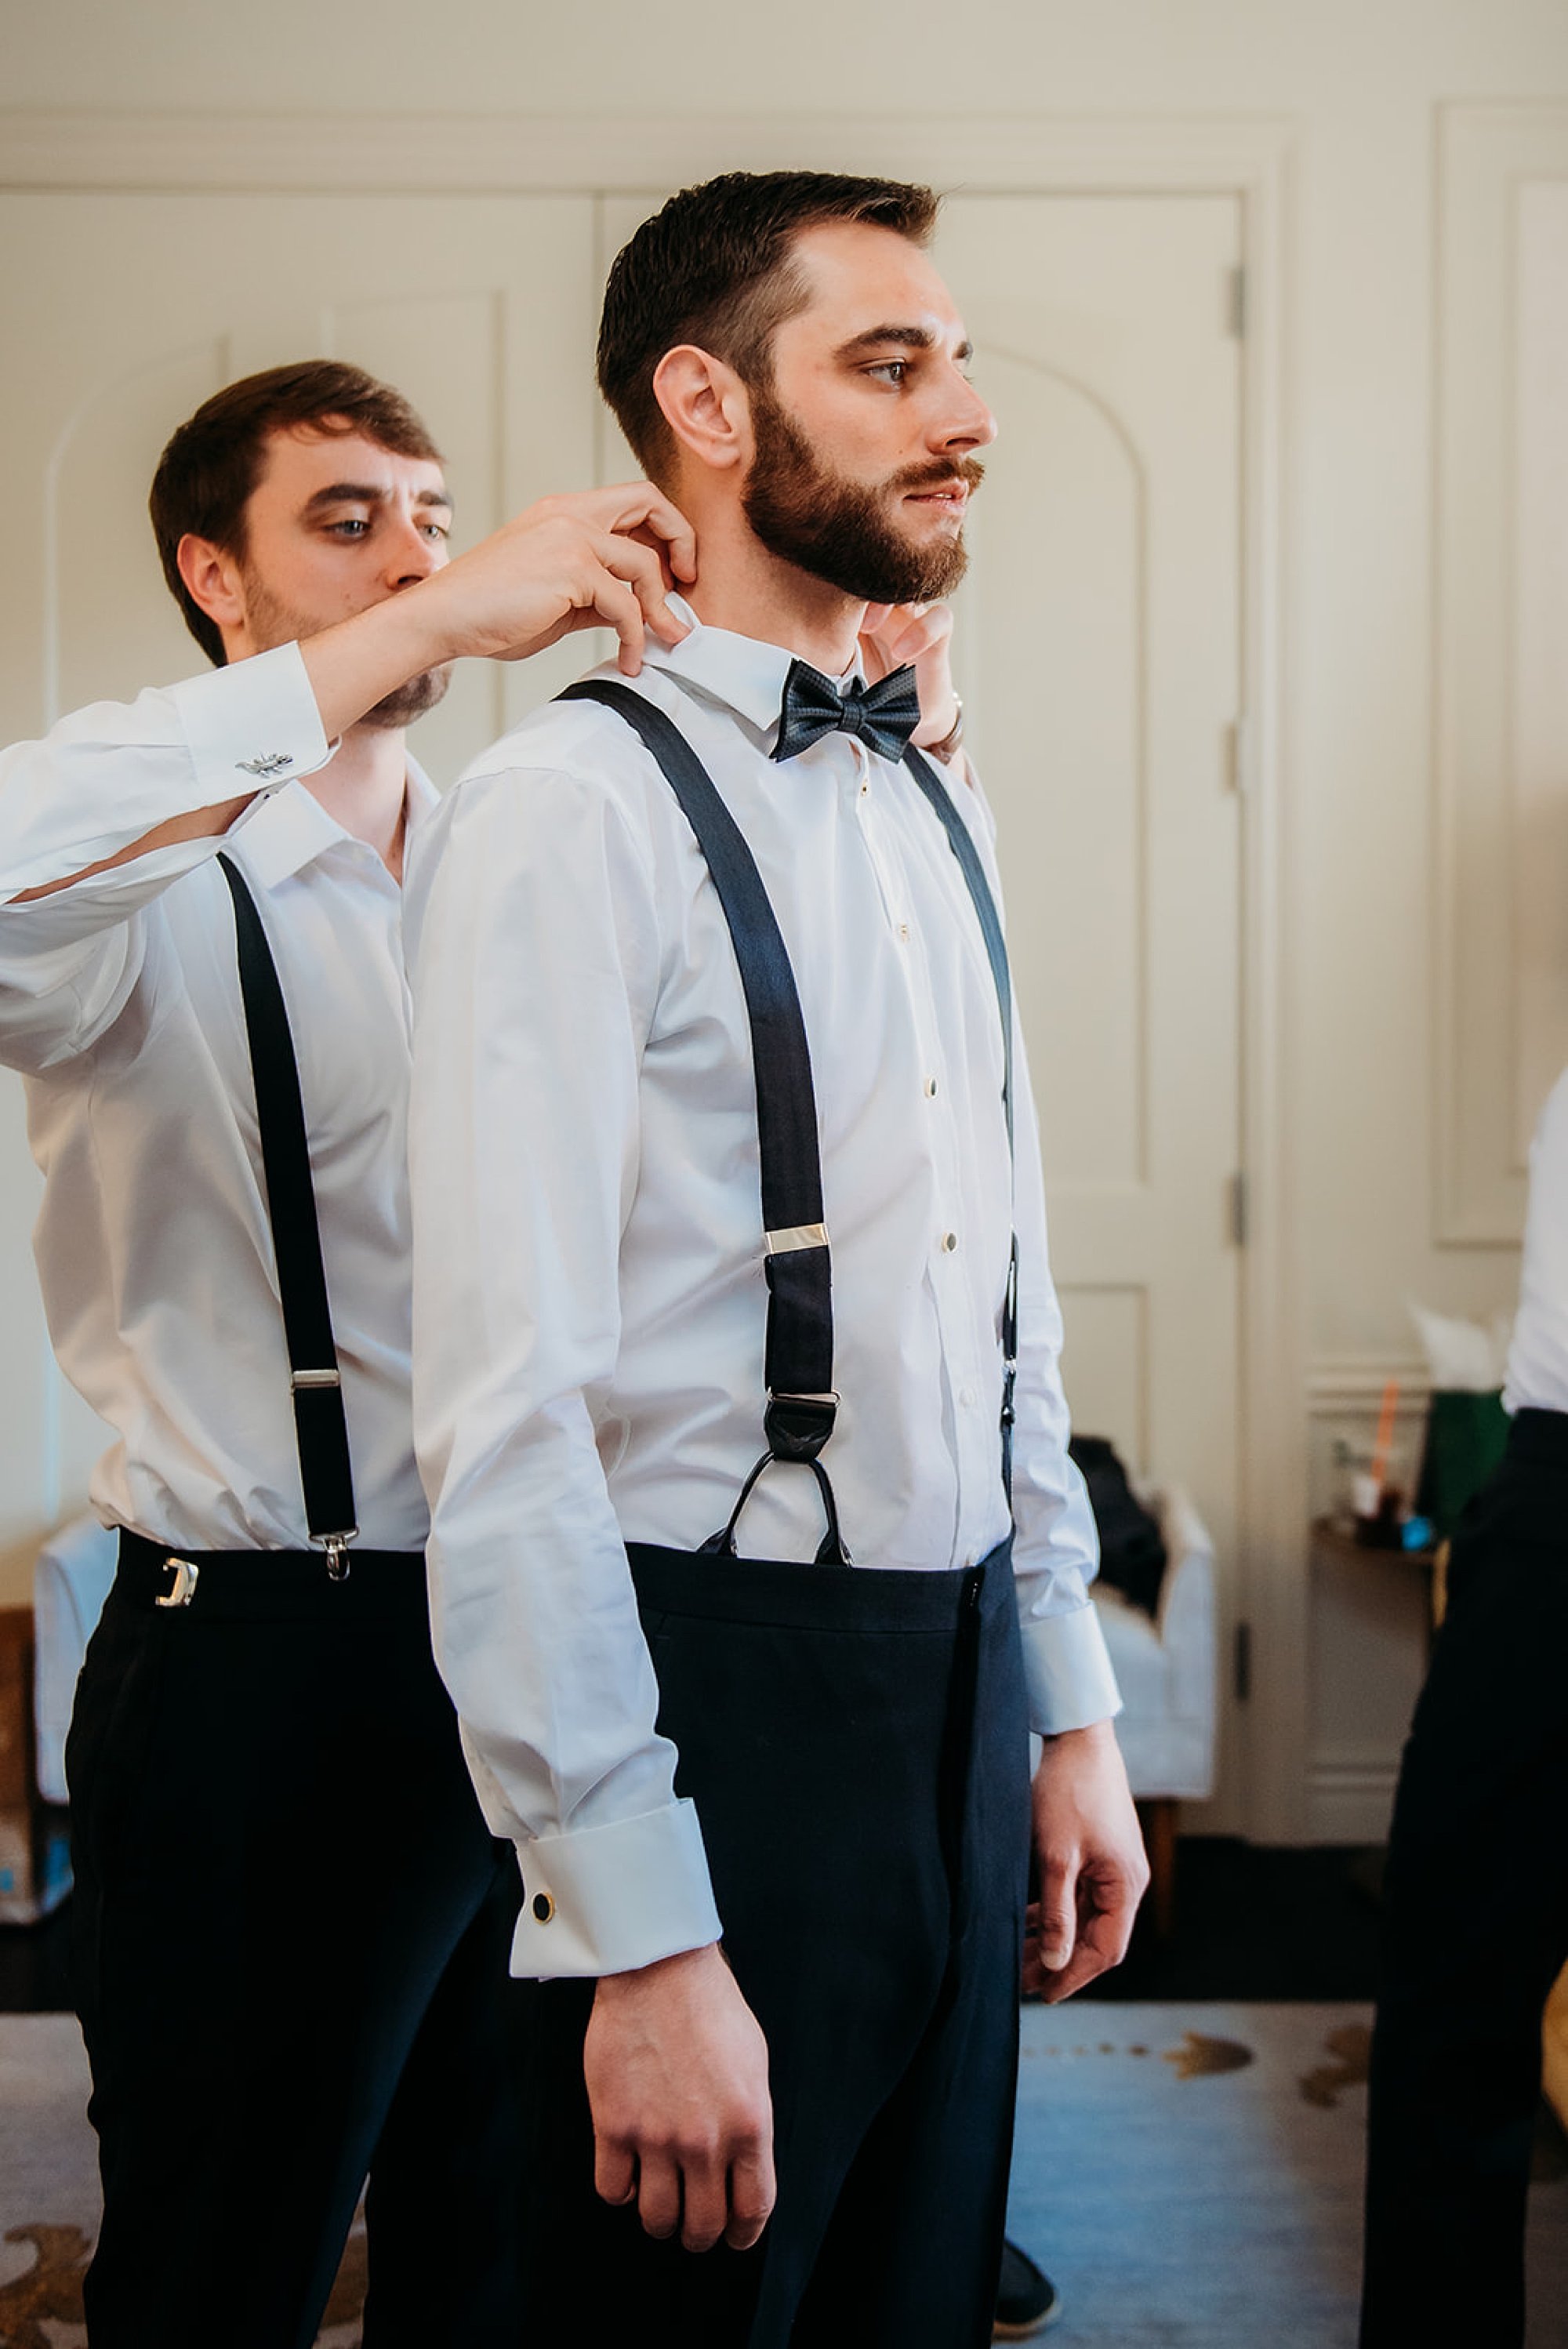 groomsman helps groom with tie and suspenders